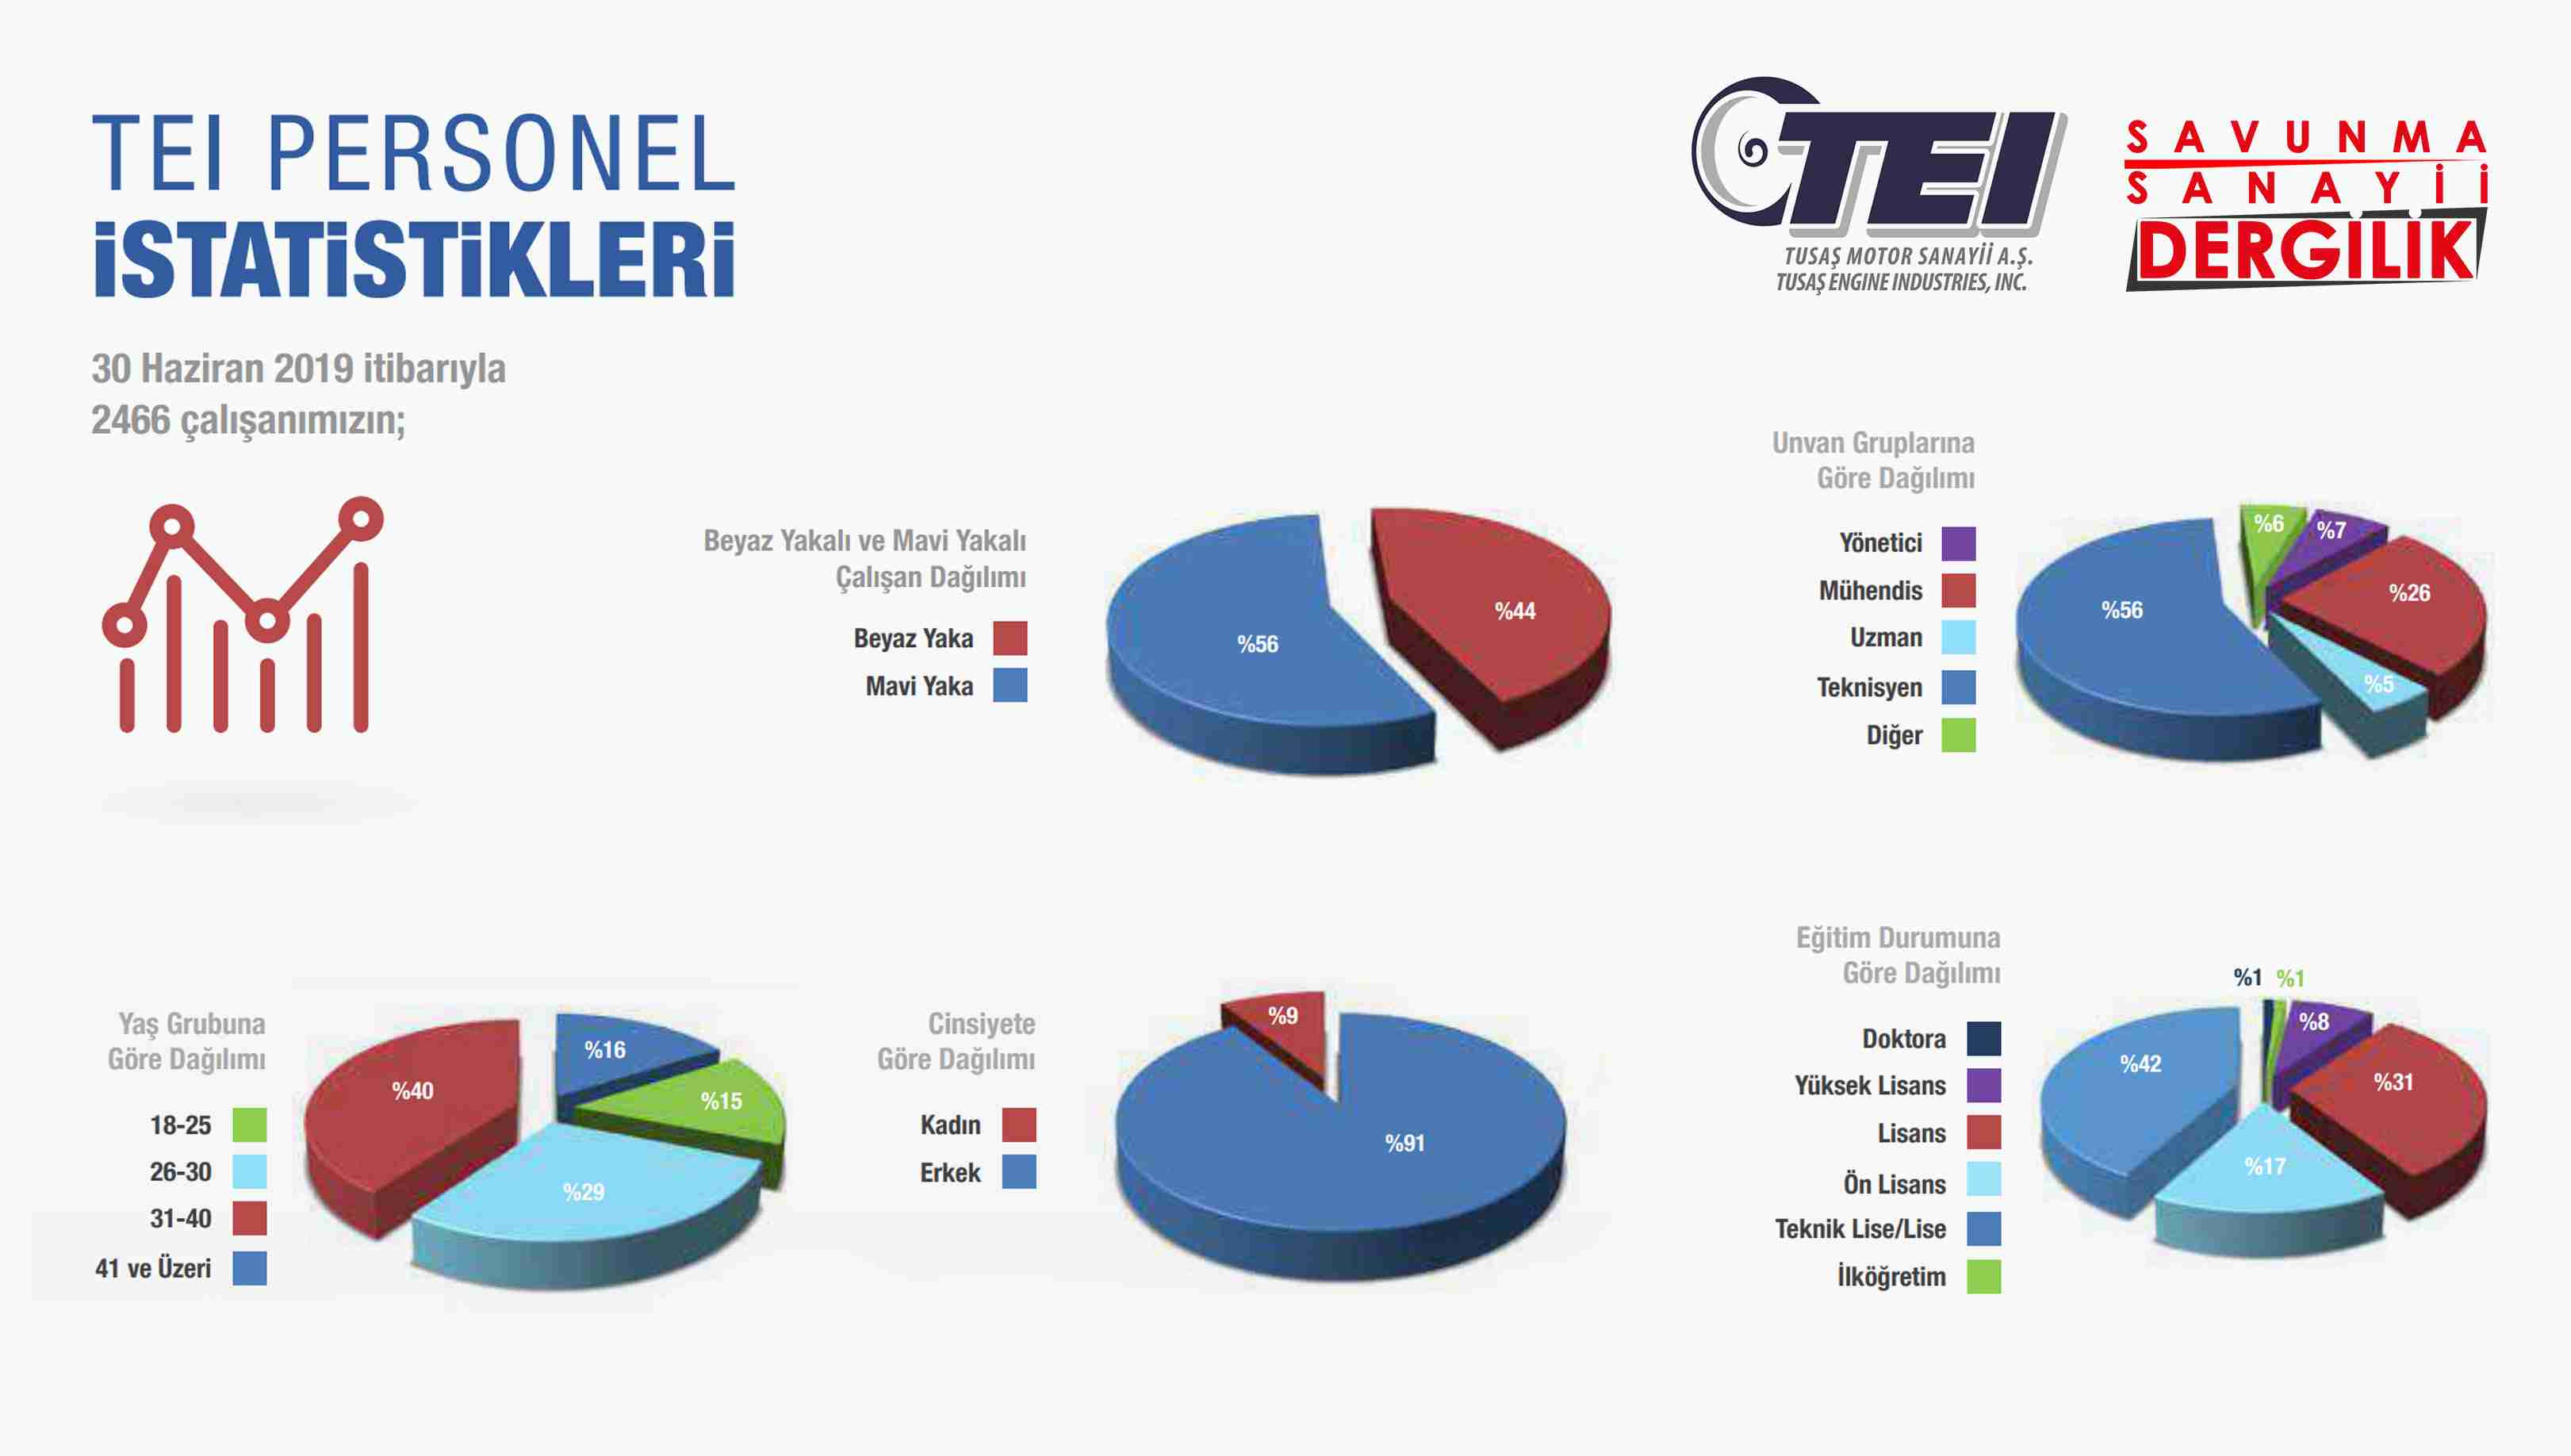 TEI'nin personel istatistikleri